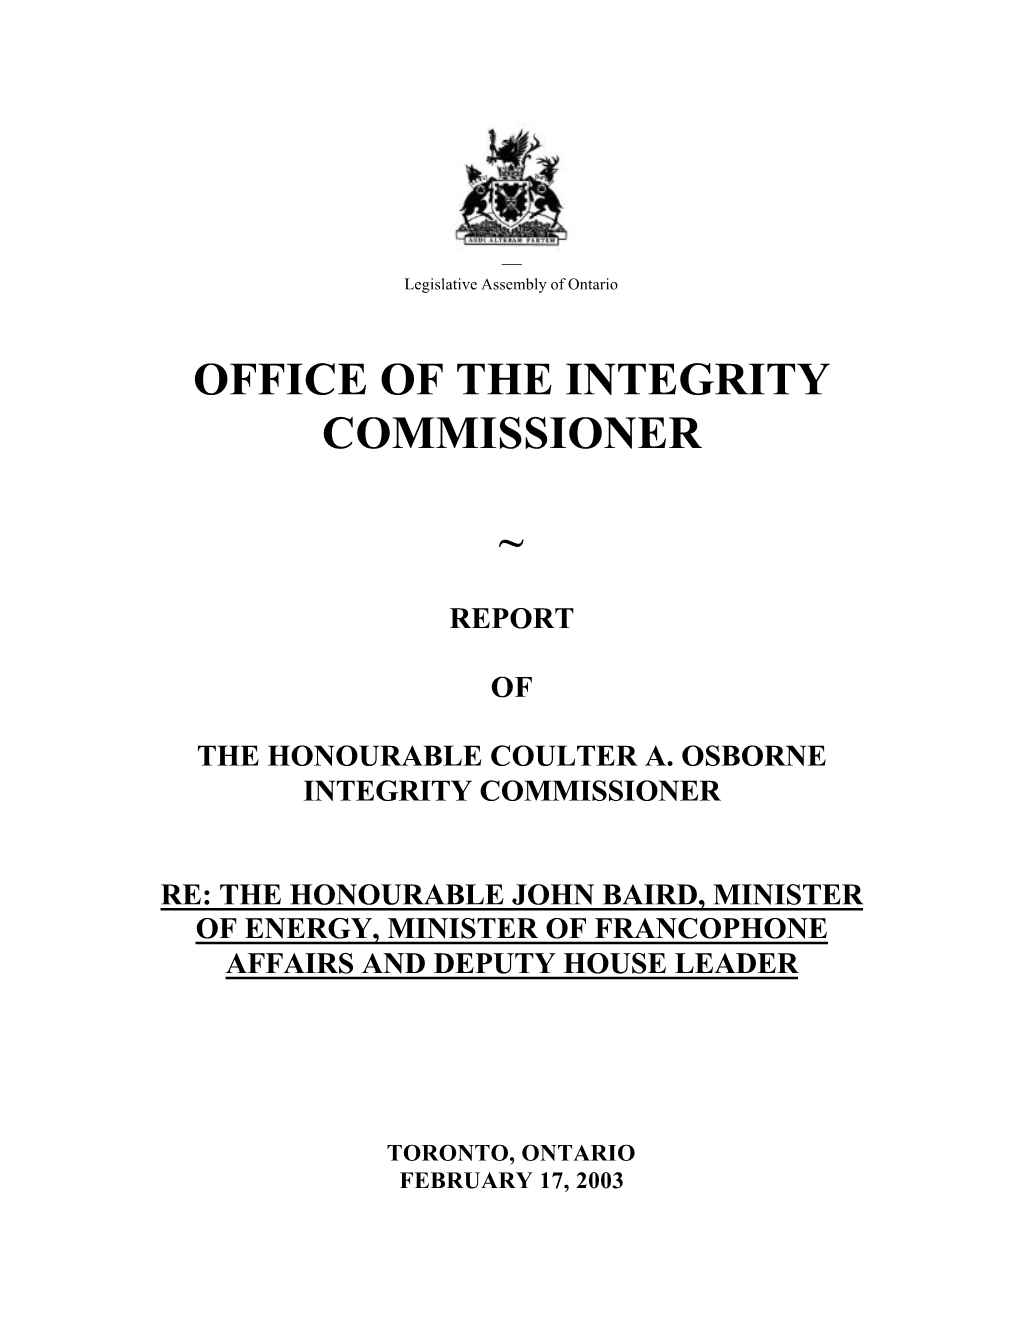 Commissioner's Report